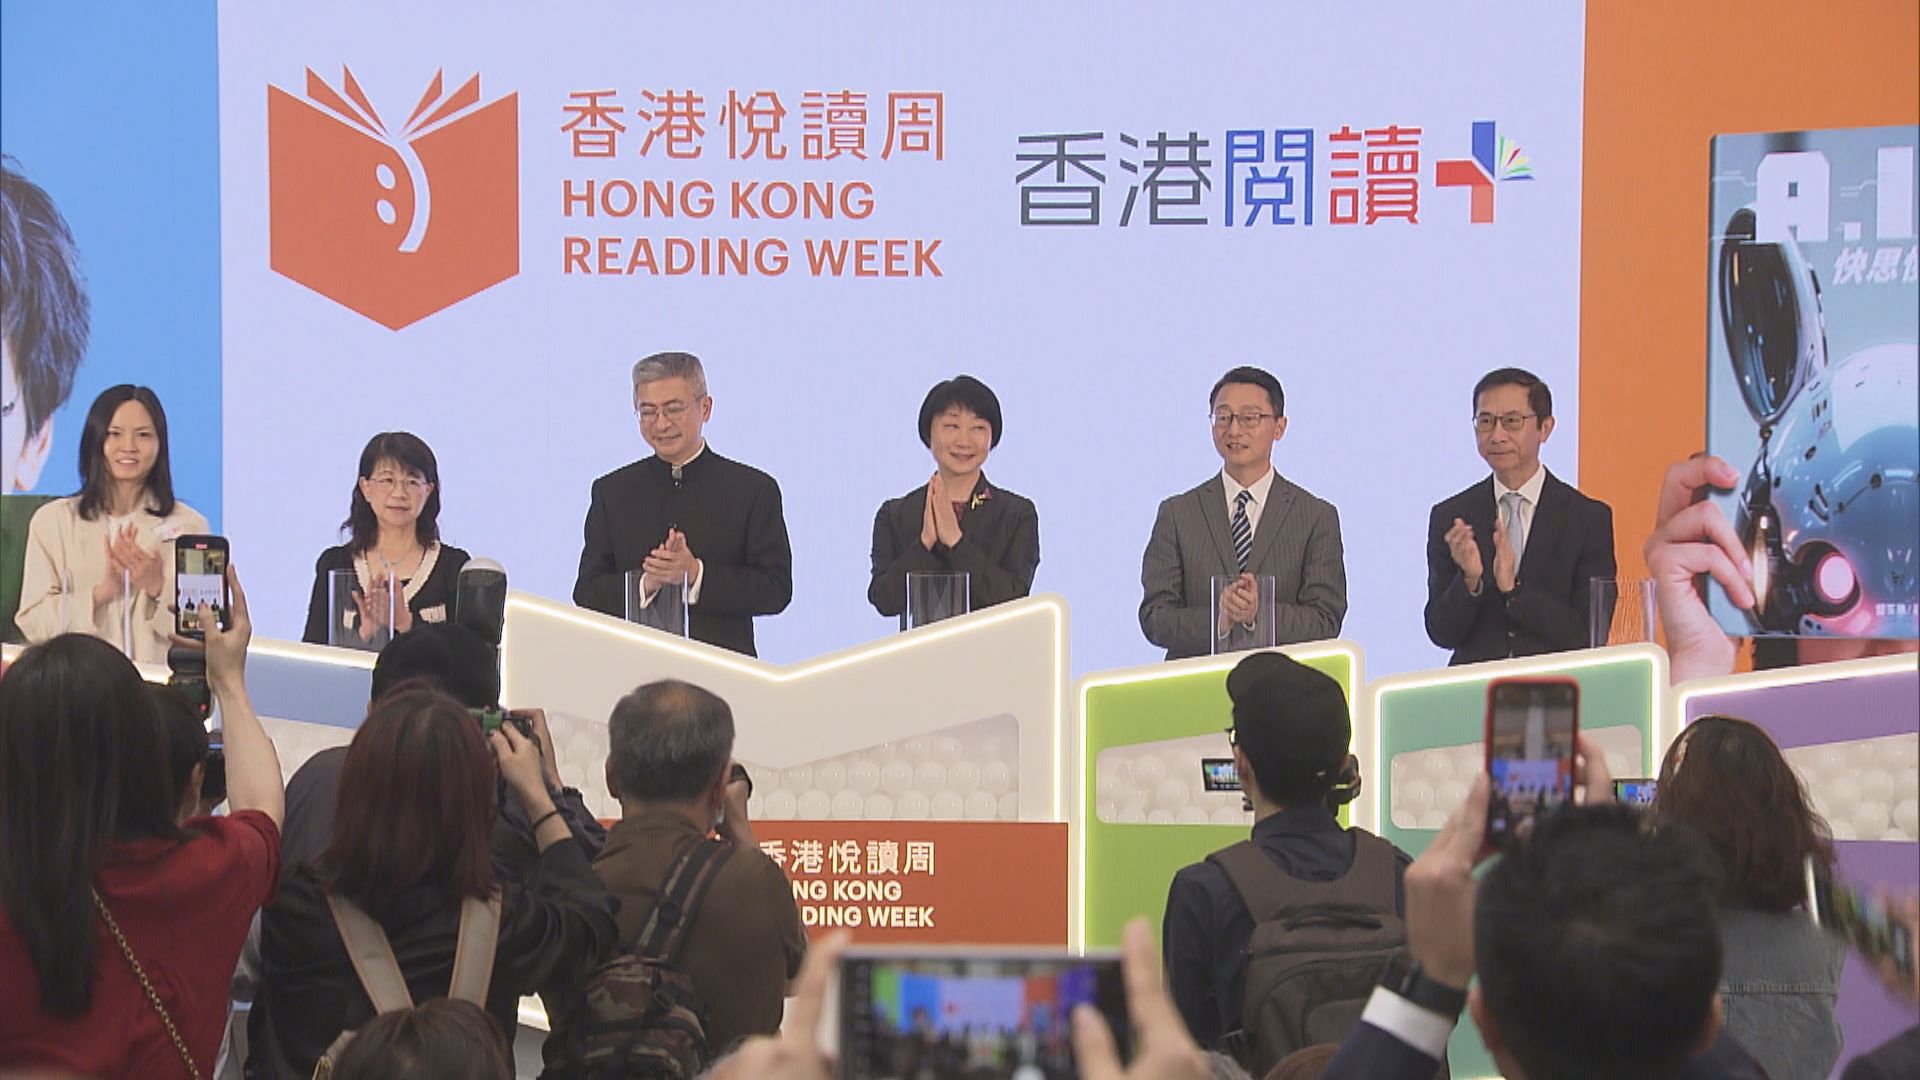 公共圖書館「香港悅讀周」推介宣揚中華文化書籍